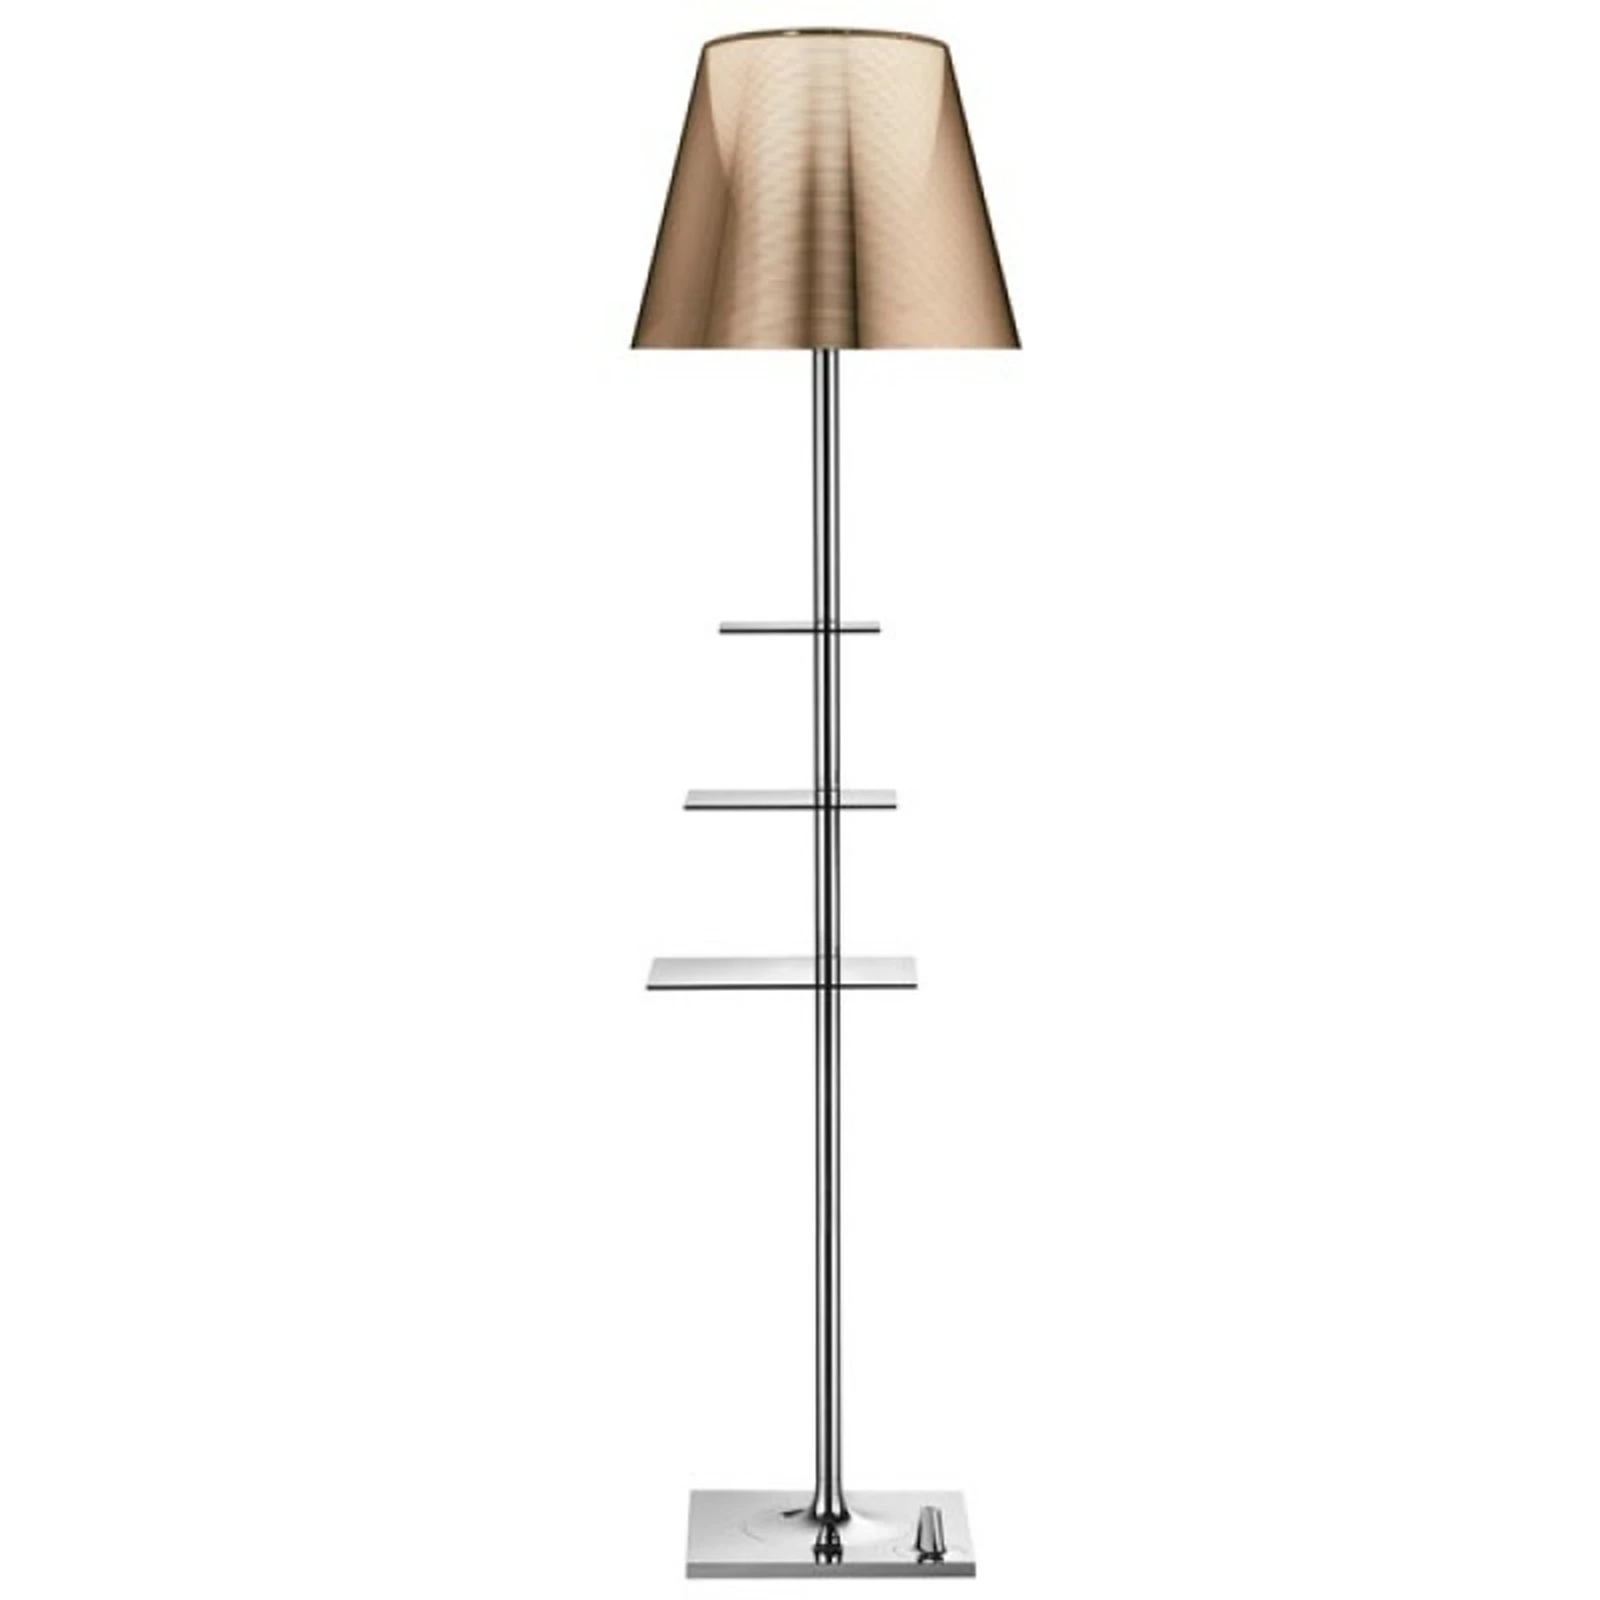 Hollow Trivial brugerdefinerede Philippe Starck » Køb lamper designet af Philippe Starck